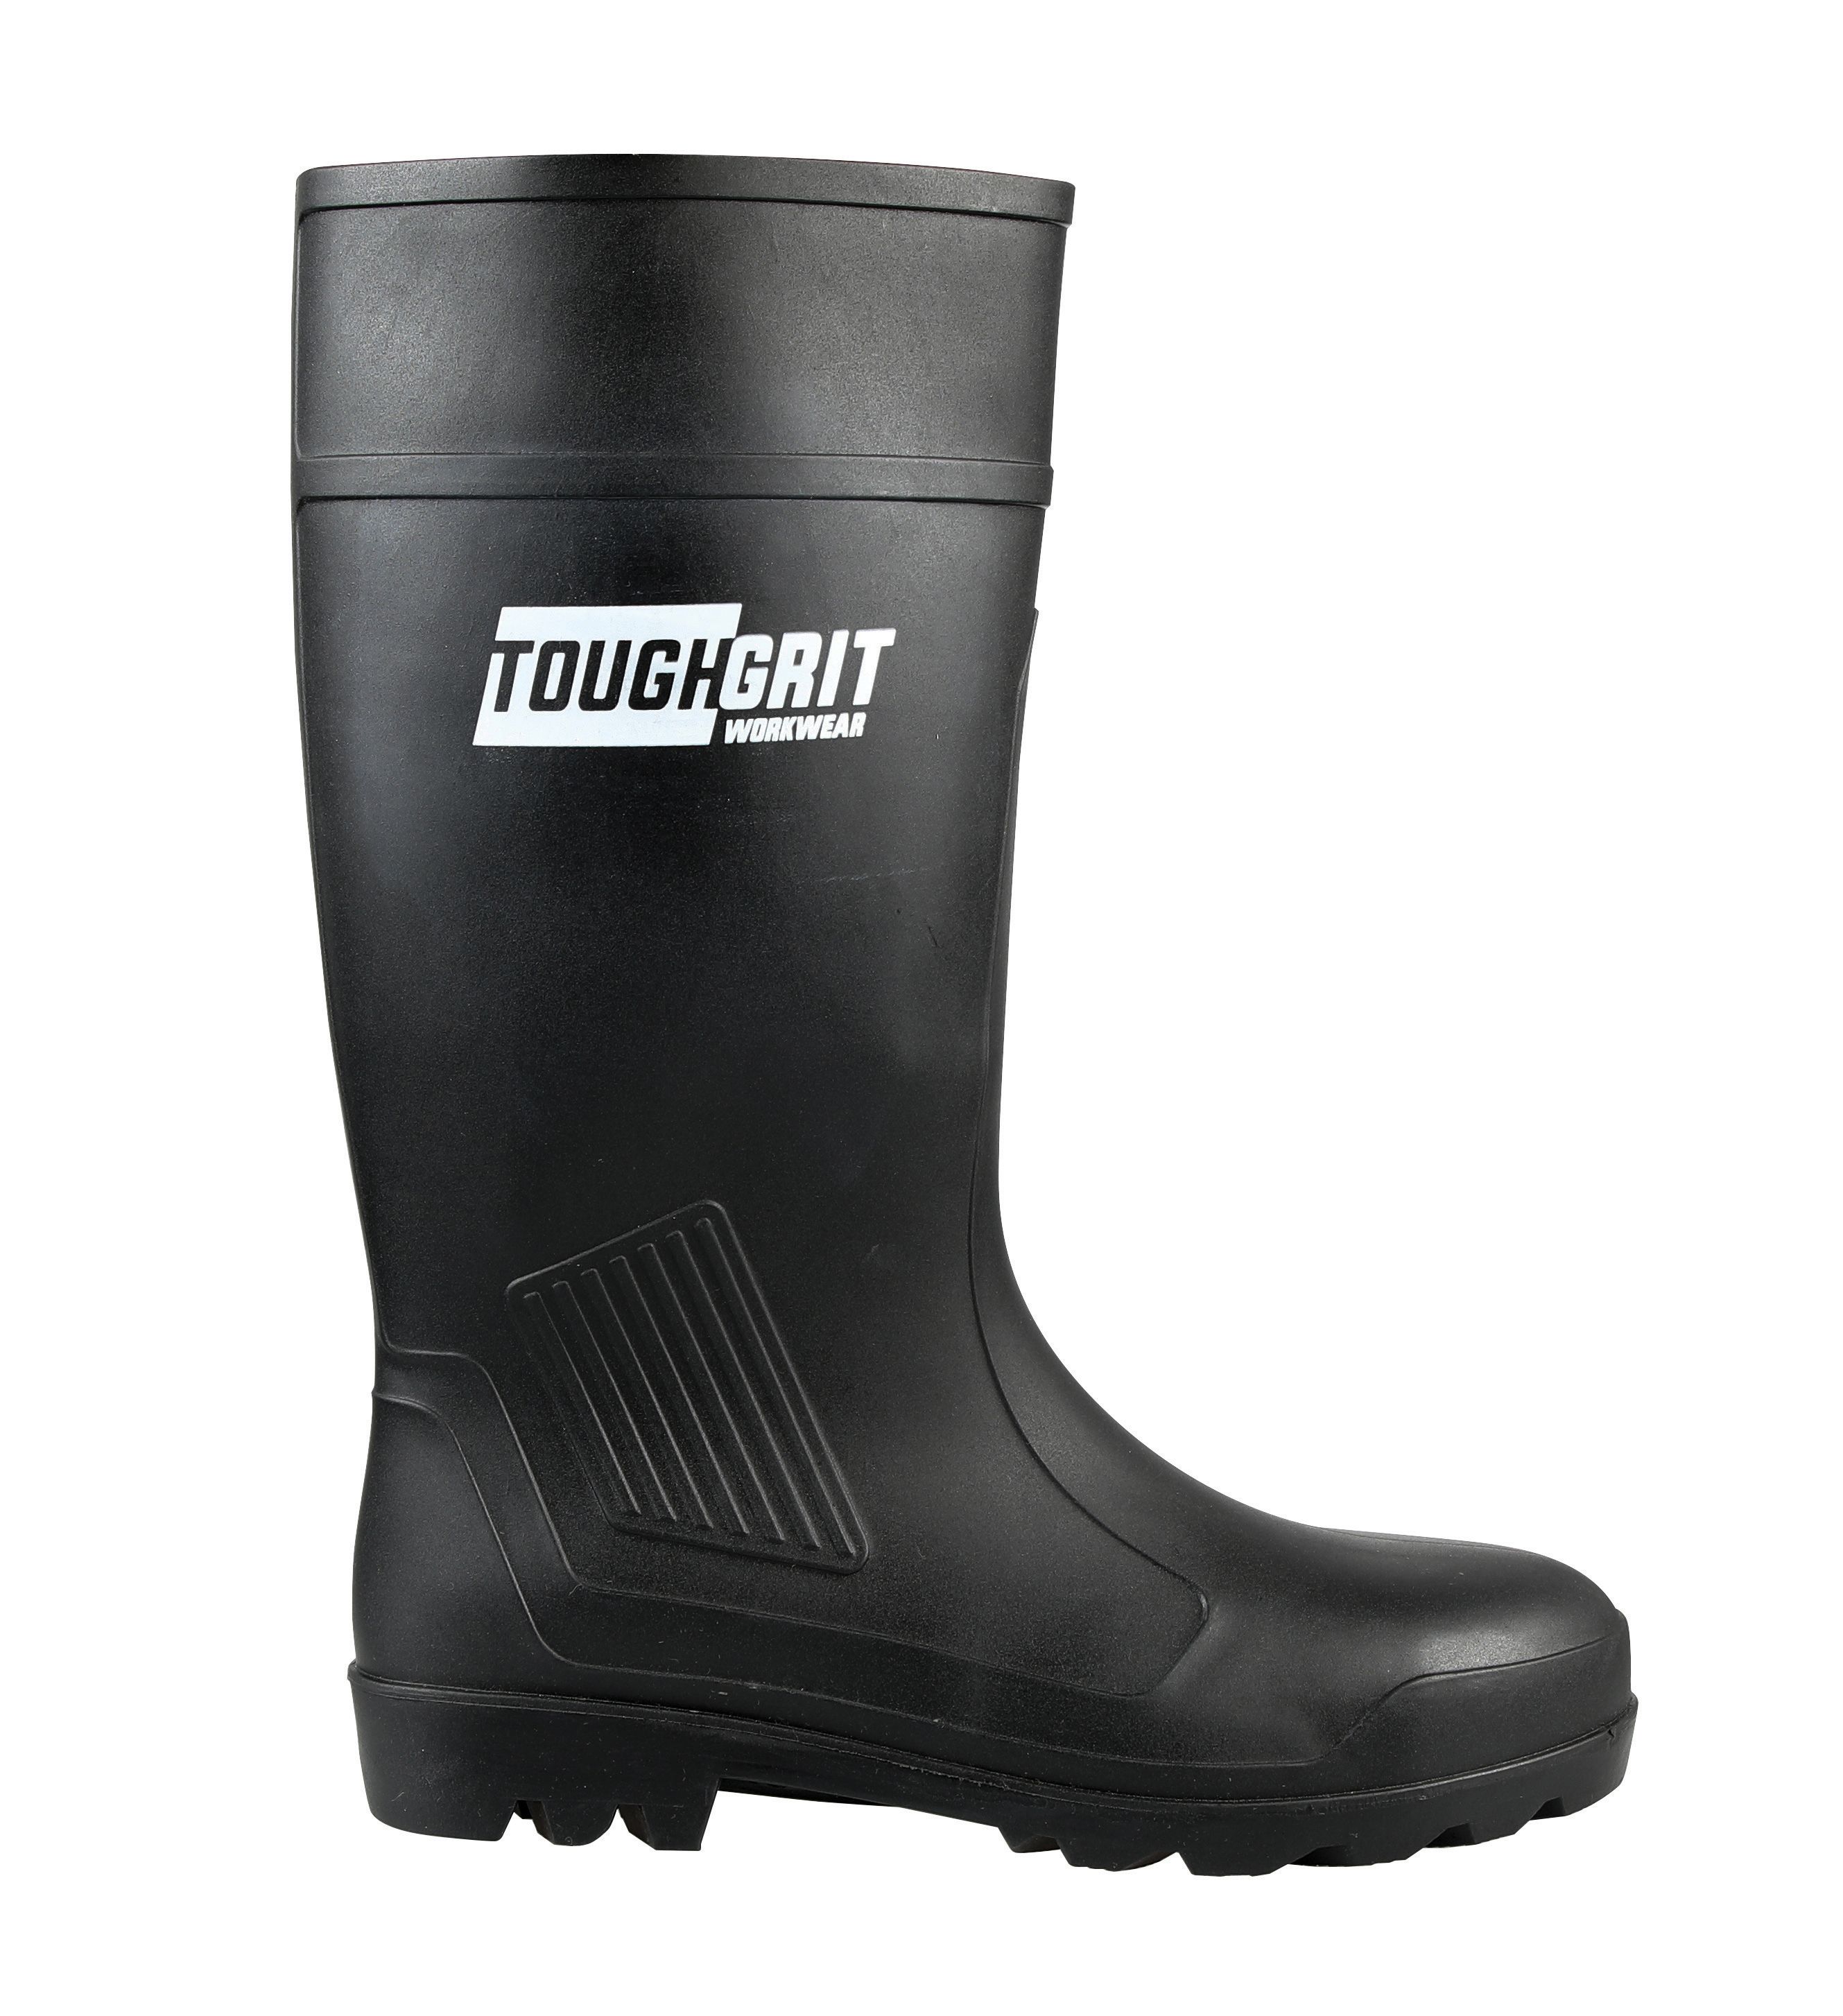 Tough Grit Larch Safety Wellington Boot - Black Size 9